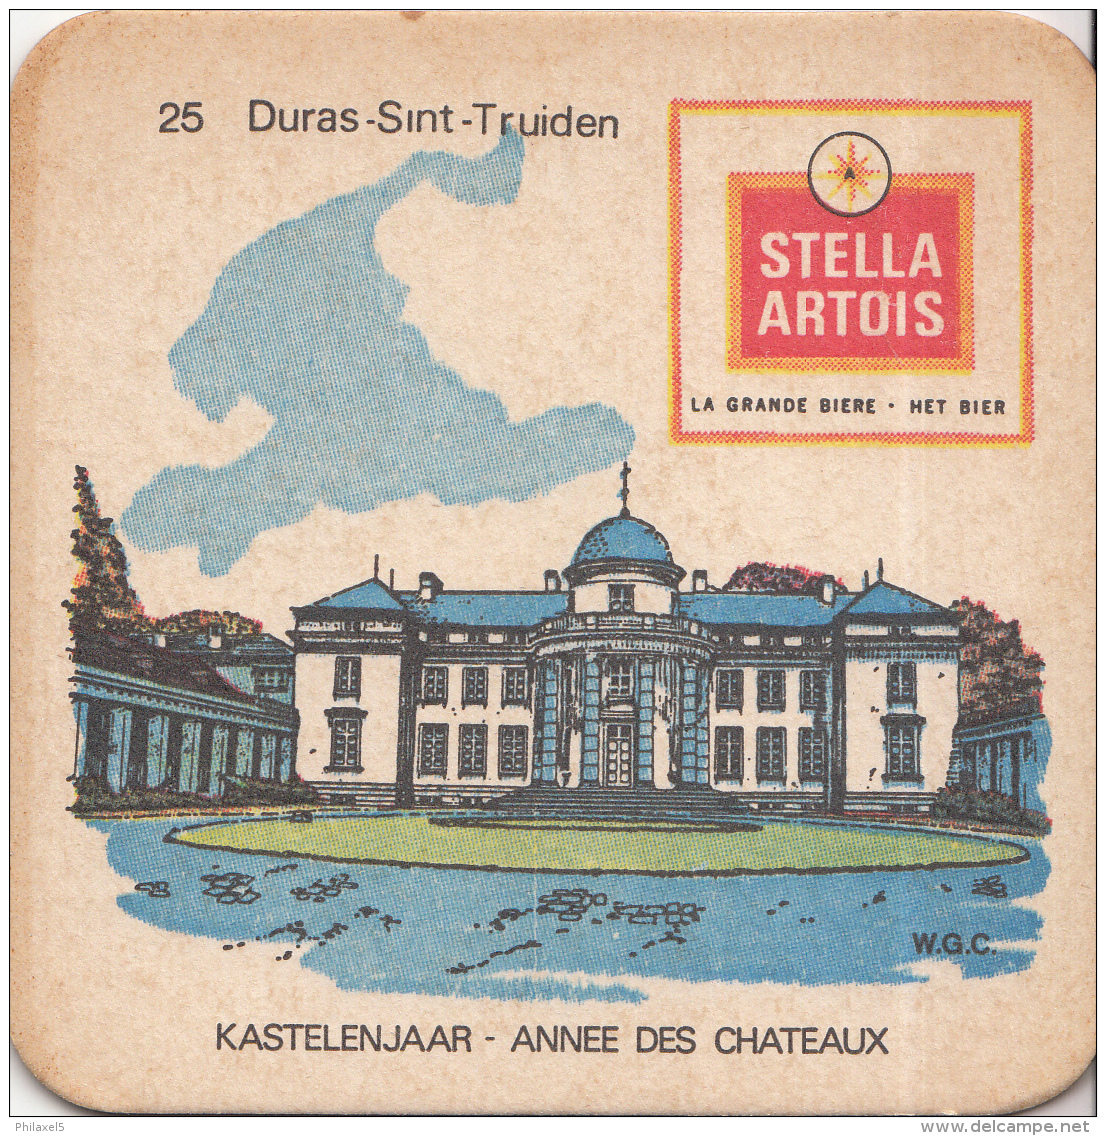 Stella Artois - Kastelenjaar - Duras-Sint-Truiden - Nummer 25 - Ongebruikt Exemplaar/kartonverkleuring - Bierviltjes